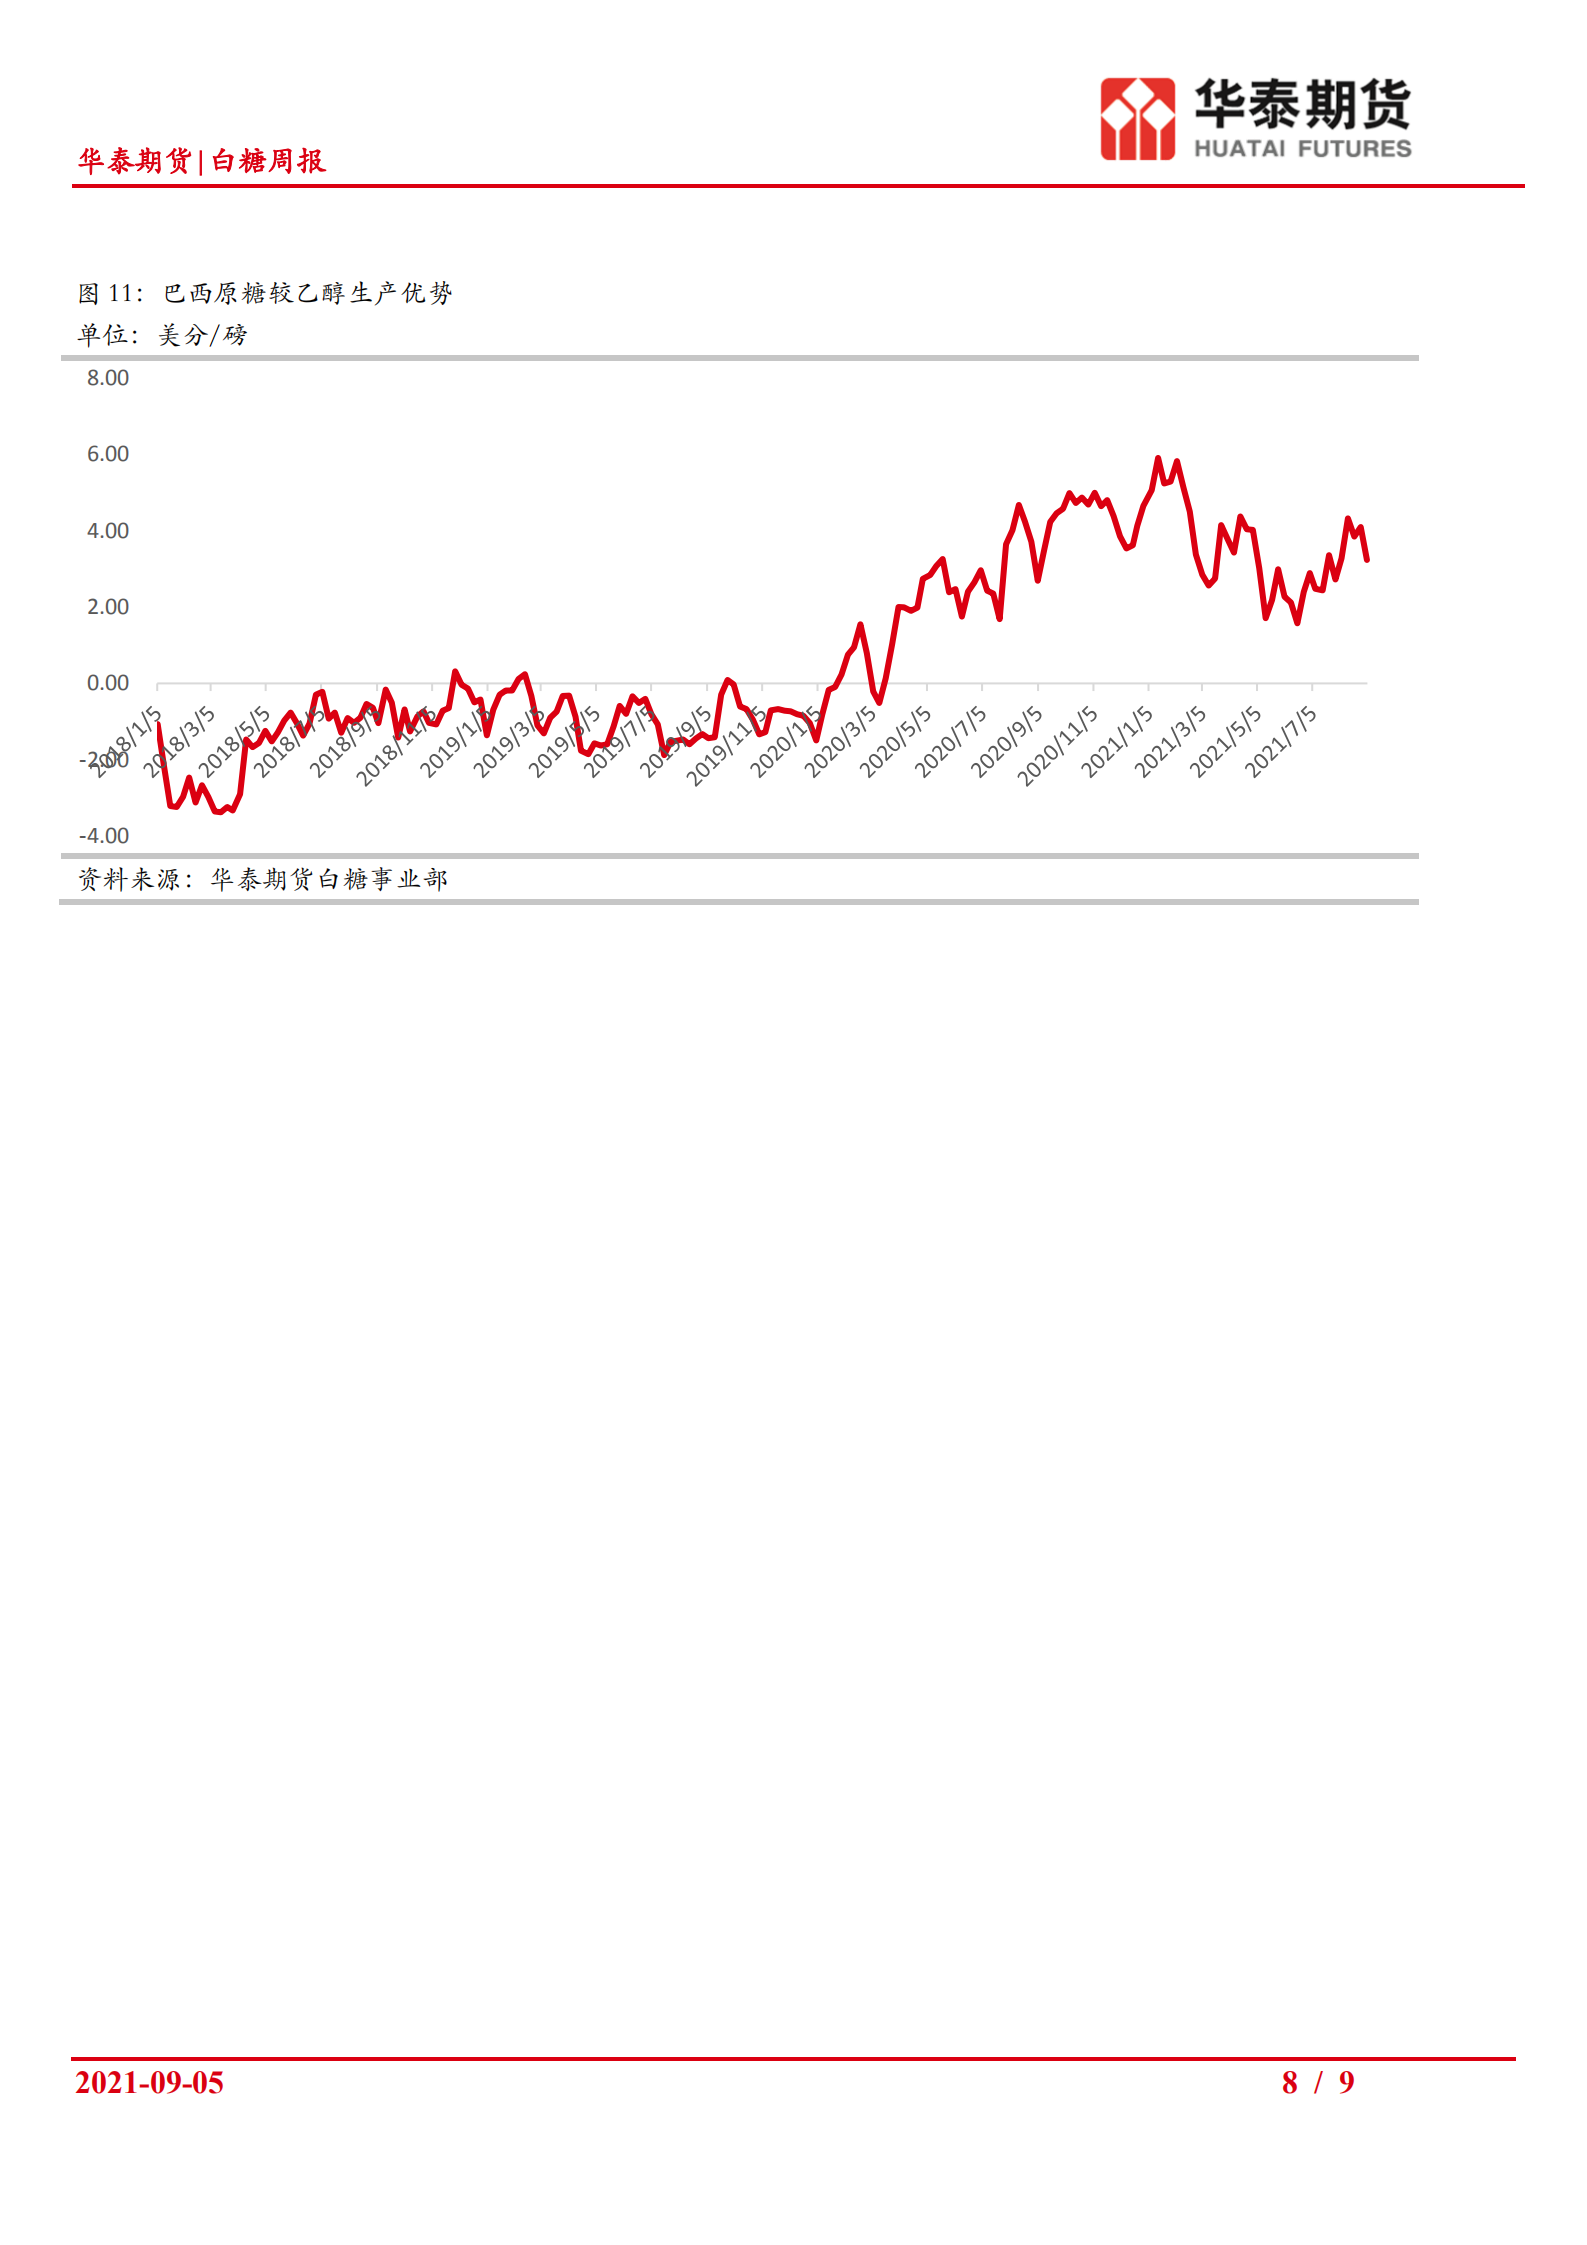 进口利润大幅倒挂支撑中期糖价上涨_07.png